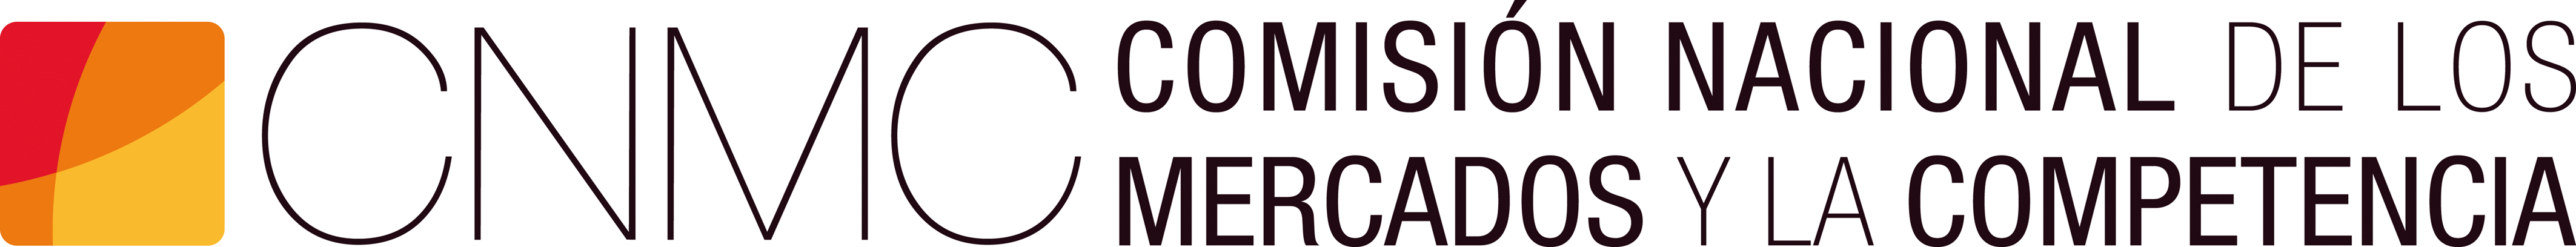 CNMC Comisión Nacional de los Mercados y la Competencia